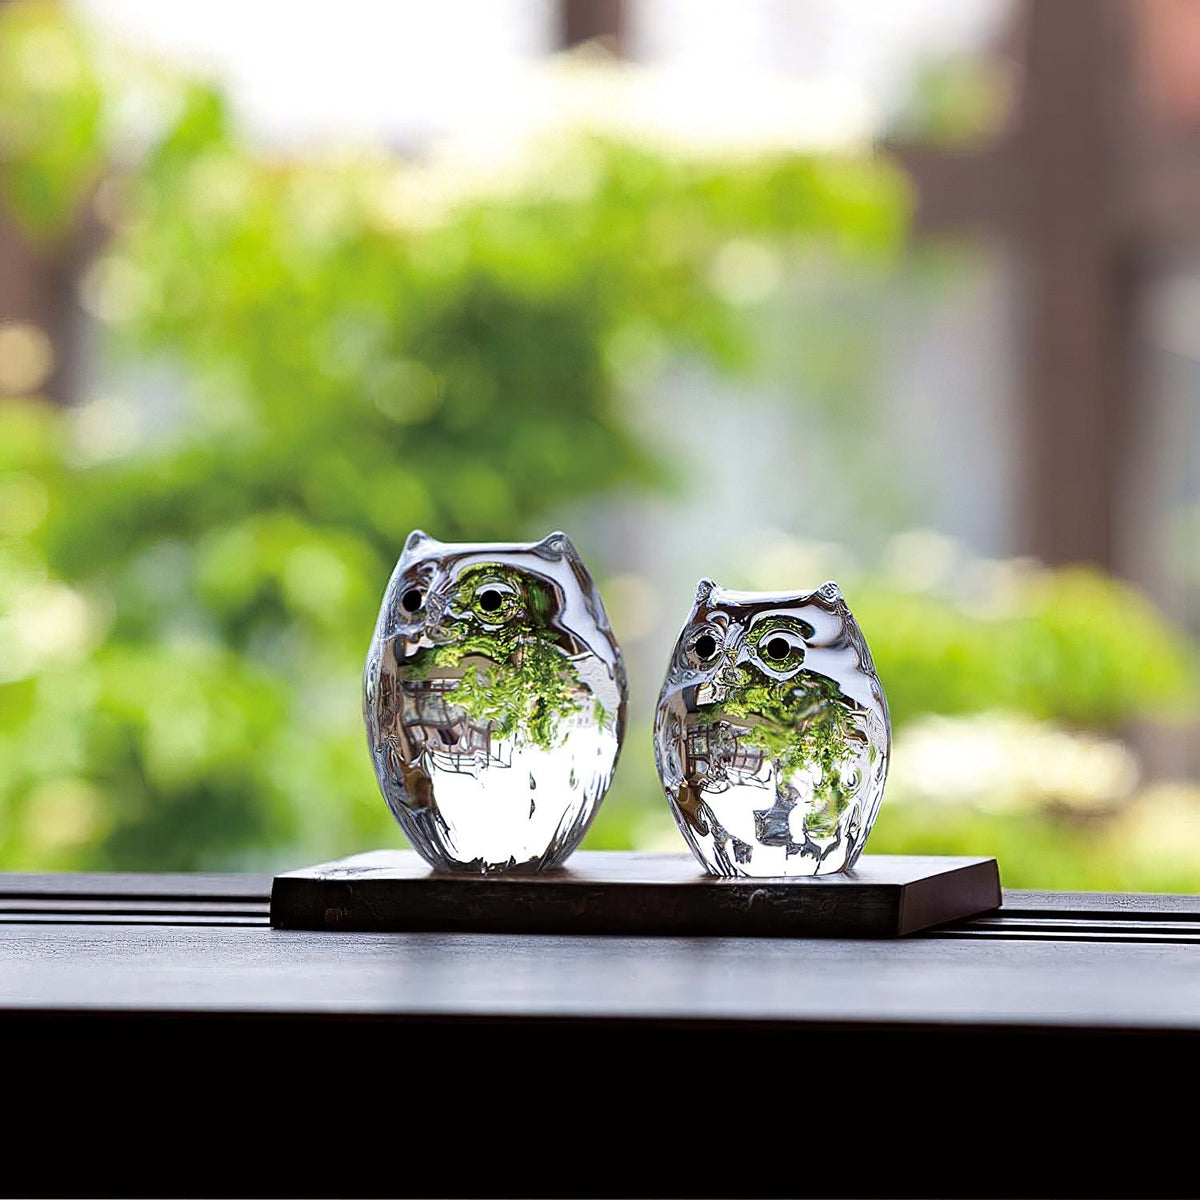 ADERIA Tsugaru Vidro Soda-Lime Glass Parent and Child Owls Ornament